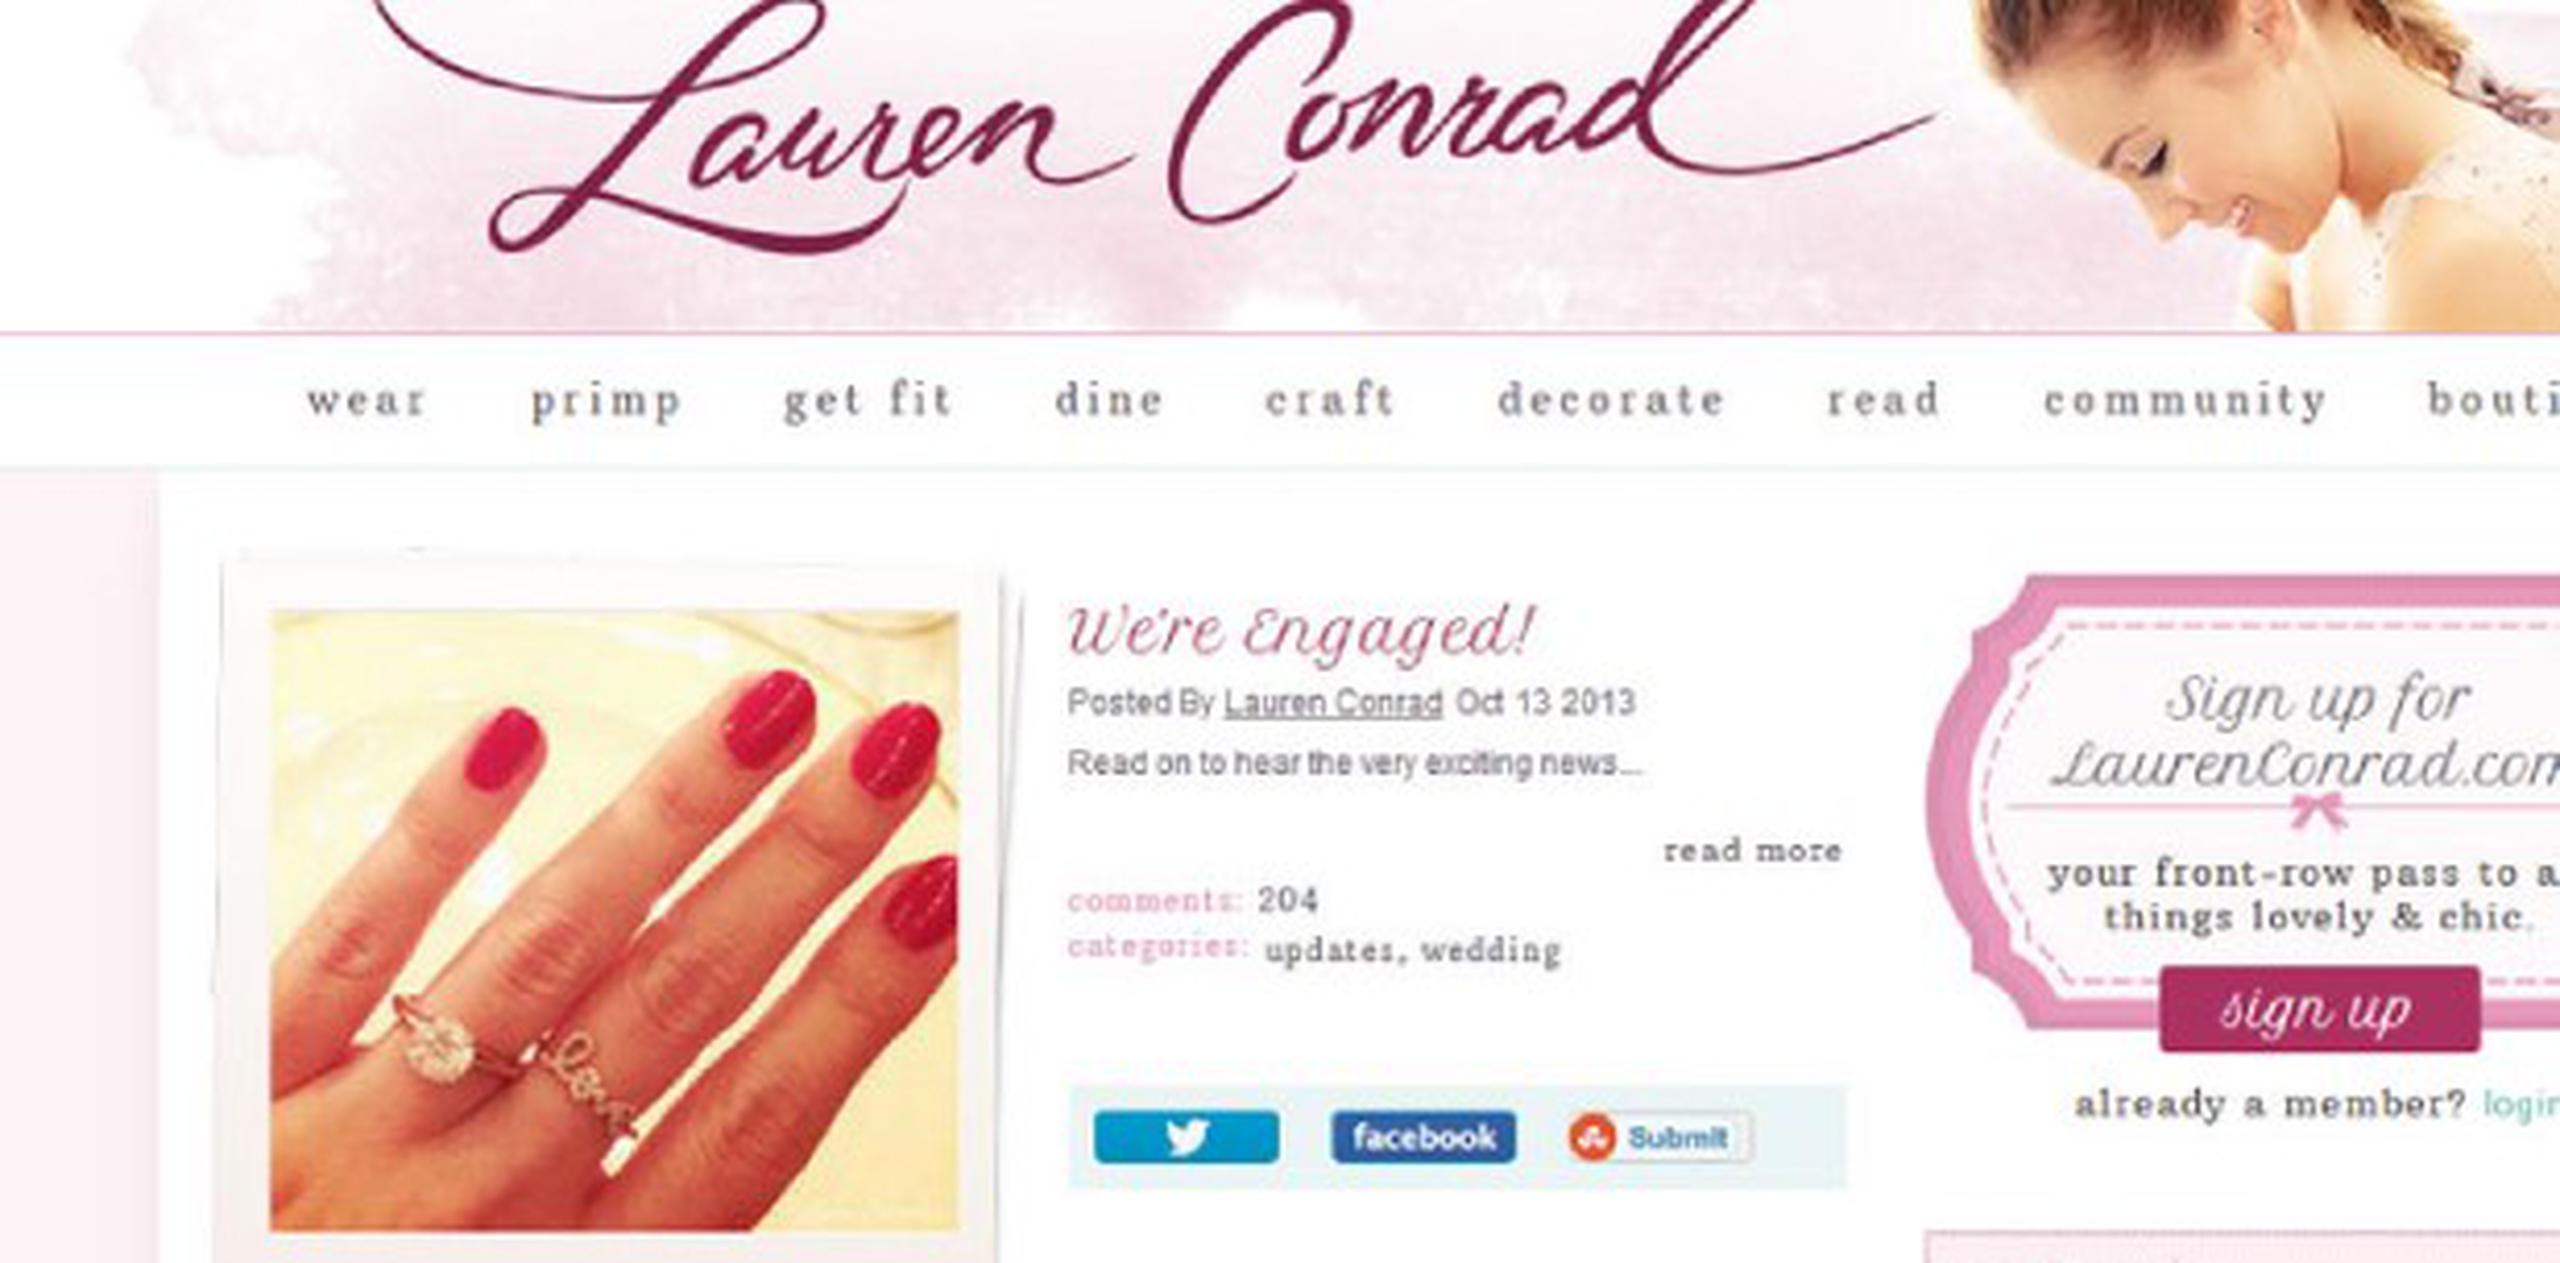 “¡Estoy más que emocionada! Preparense para mas contenido de boda aquí en LaurenConrad.com al comenzar el proceso de planicifación. ” publicó Conrad en su blog. (www.laurenconrad.com)